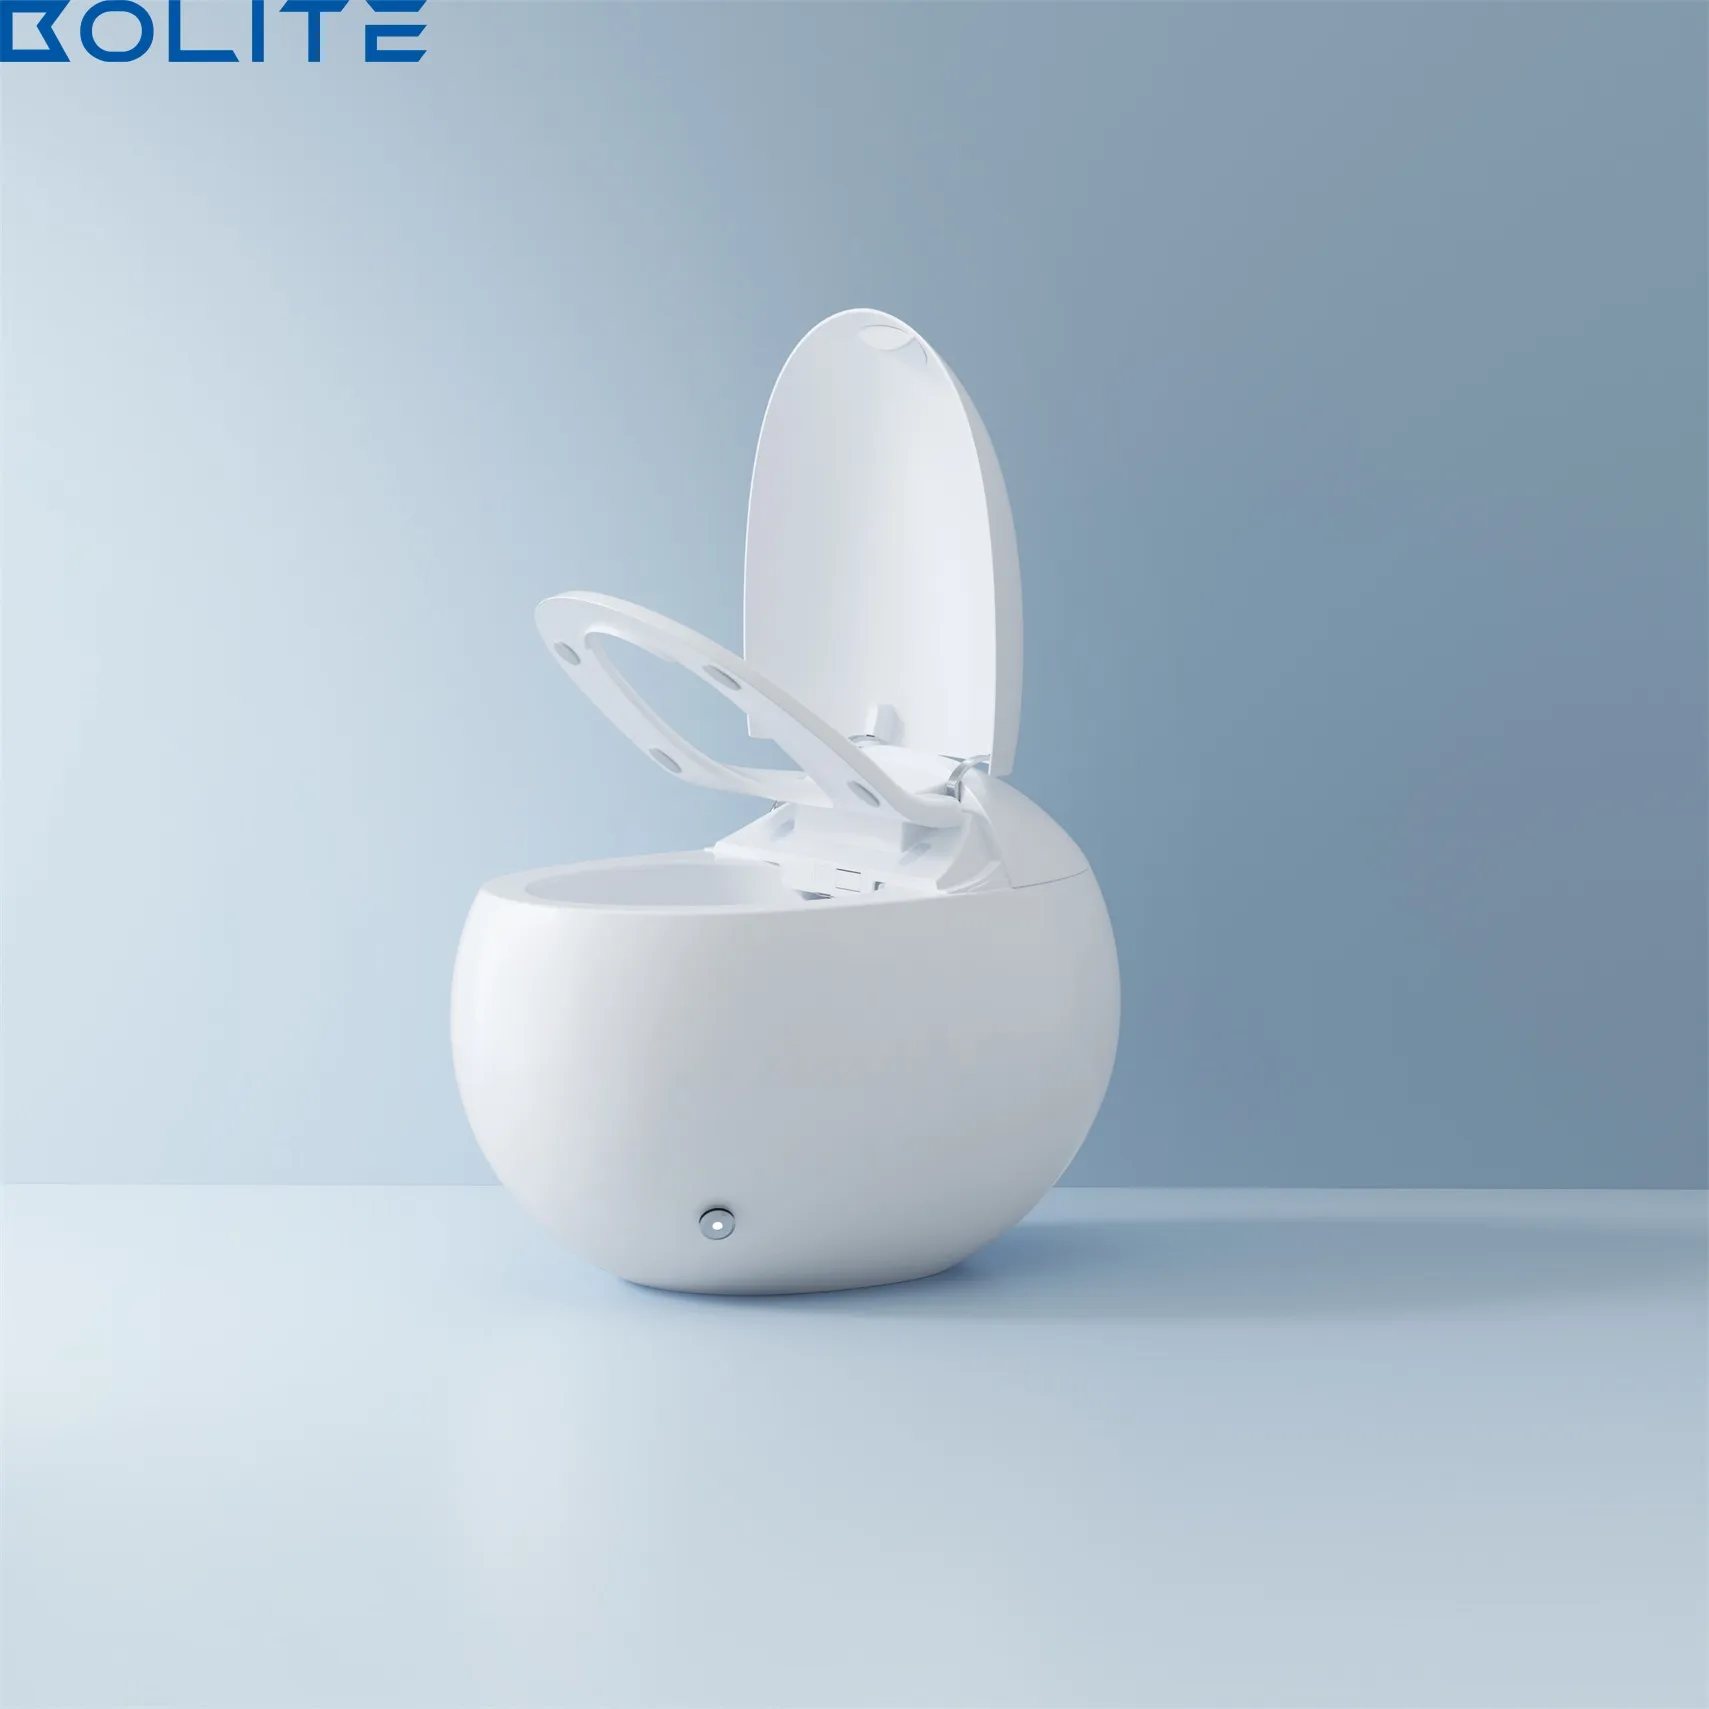 Yüksek kaliteli elektrikli su tankı ile otomatik otomatik temizleme tek parça yumurta şekli akıllı tuvalet